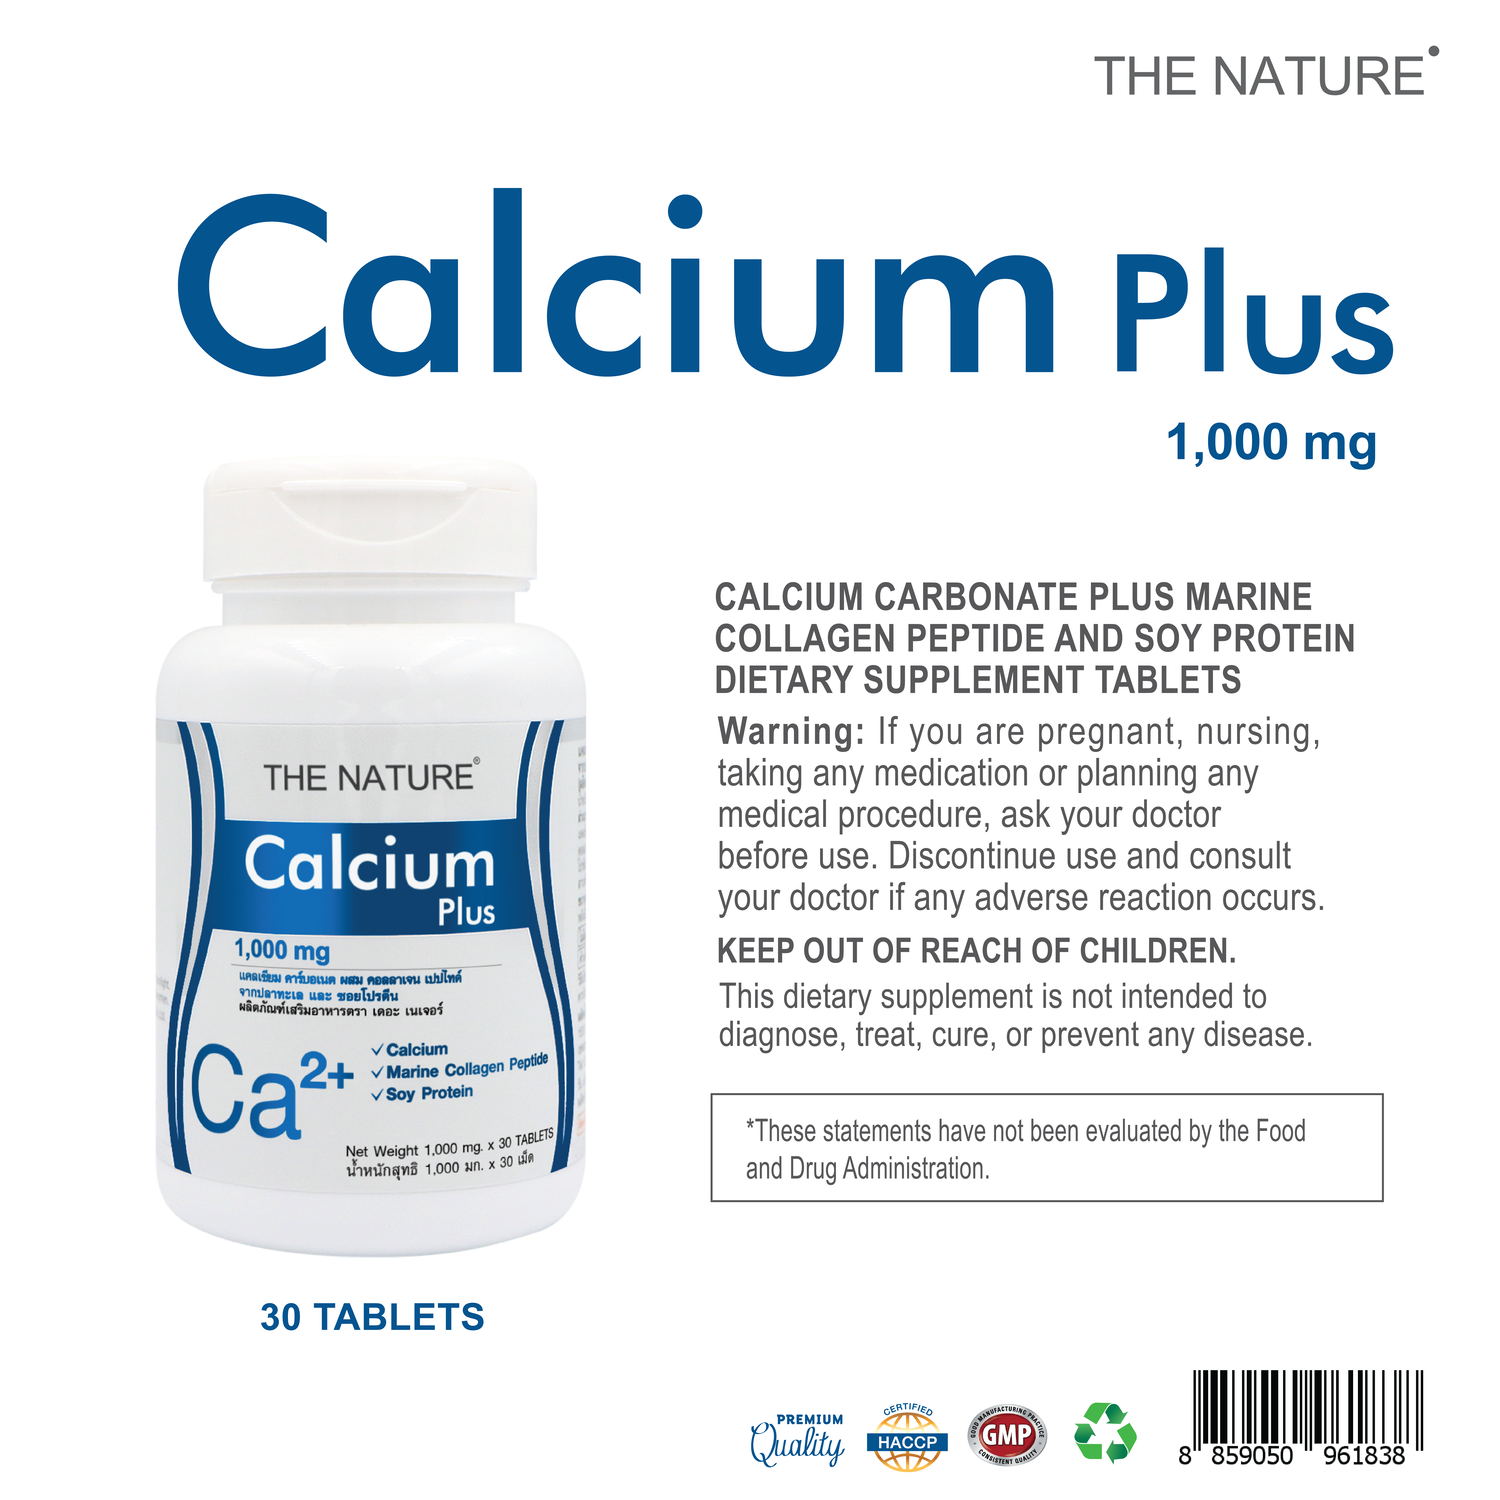 Calcium plus Collagen x 3 ขวด Soy Protein THE NATURE แคลเซียม พลัส คอลลาเจน ซอยโปรตีน เดอะเนเจอร์ บำรุงกระดูก 3 ขวด บรรจุขวดละ 30 เม็ด